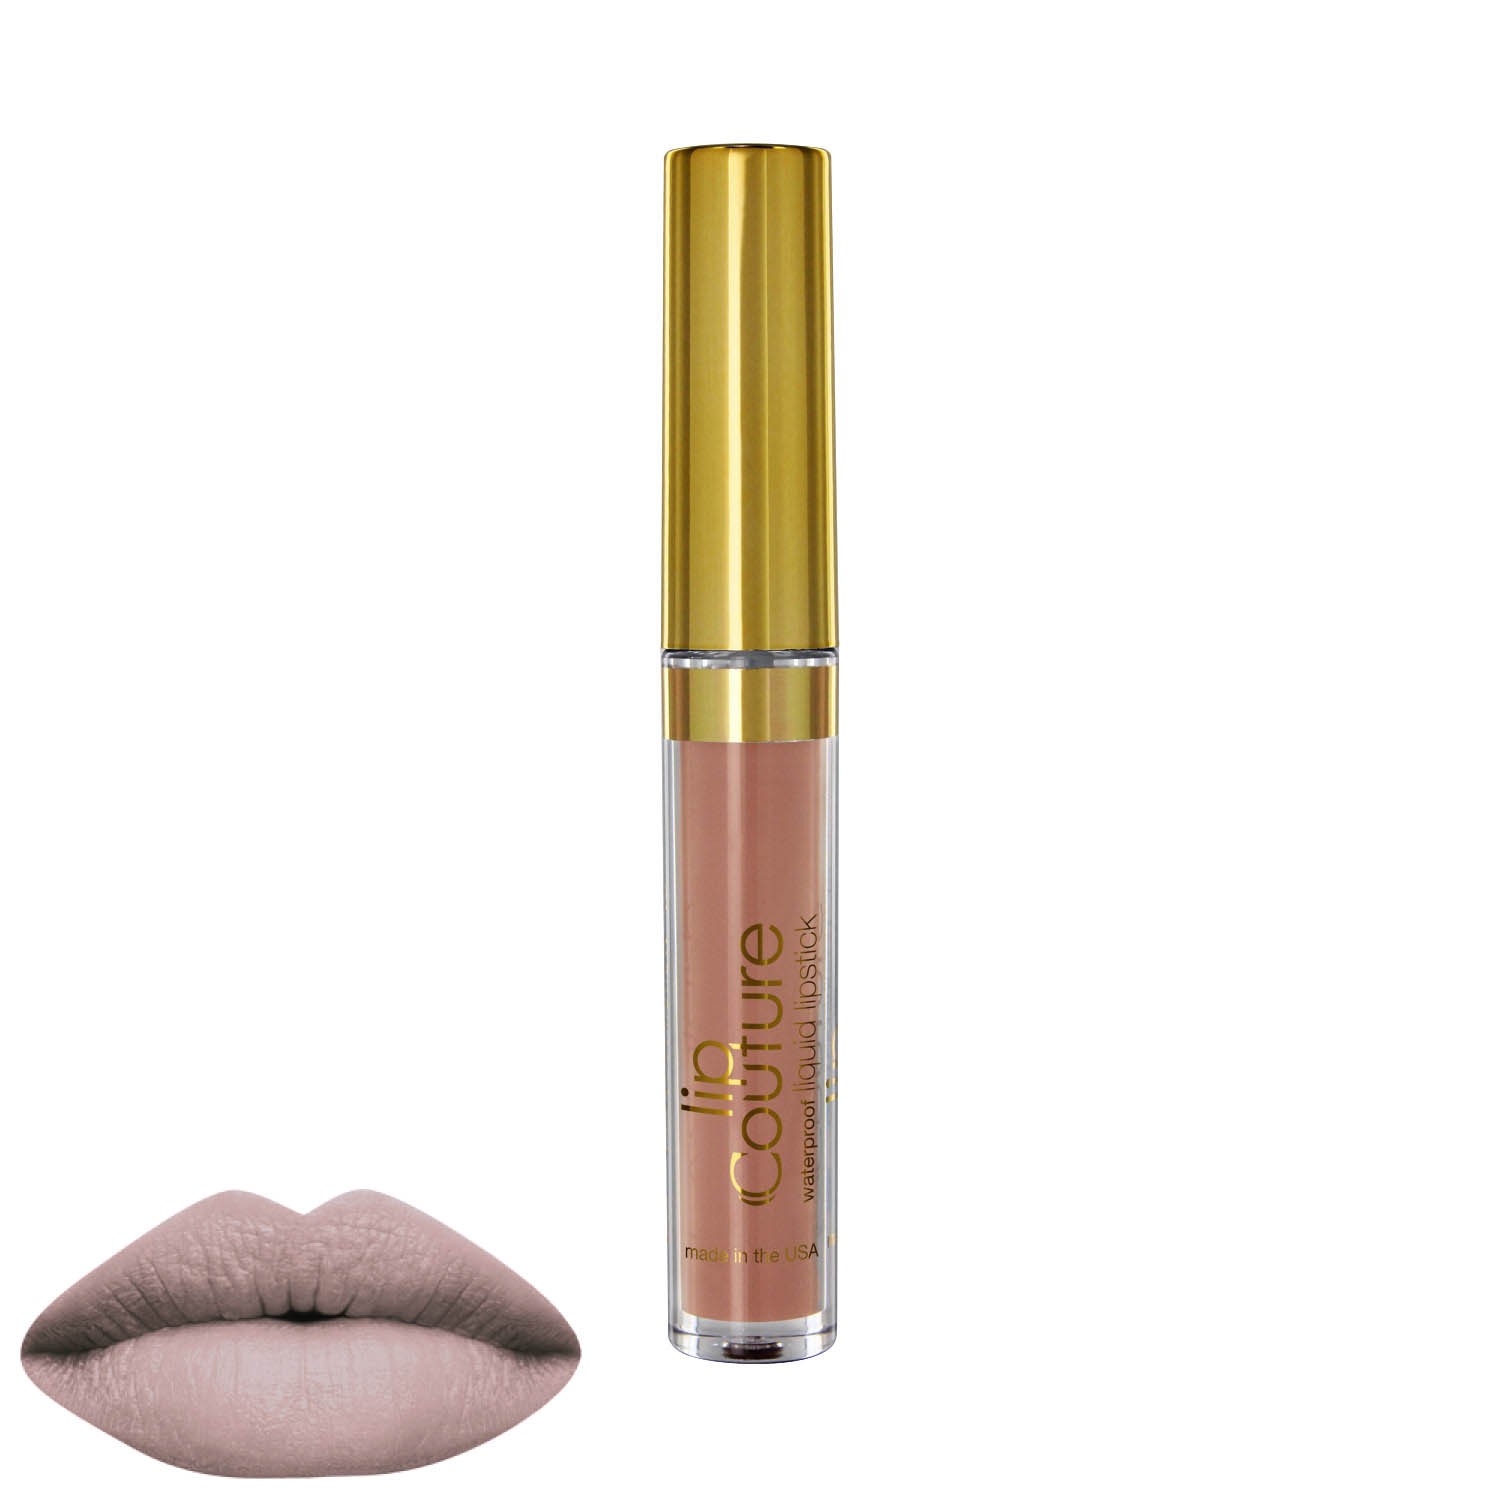 Liquid Lipstick - Lip Couture